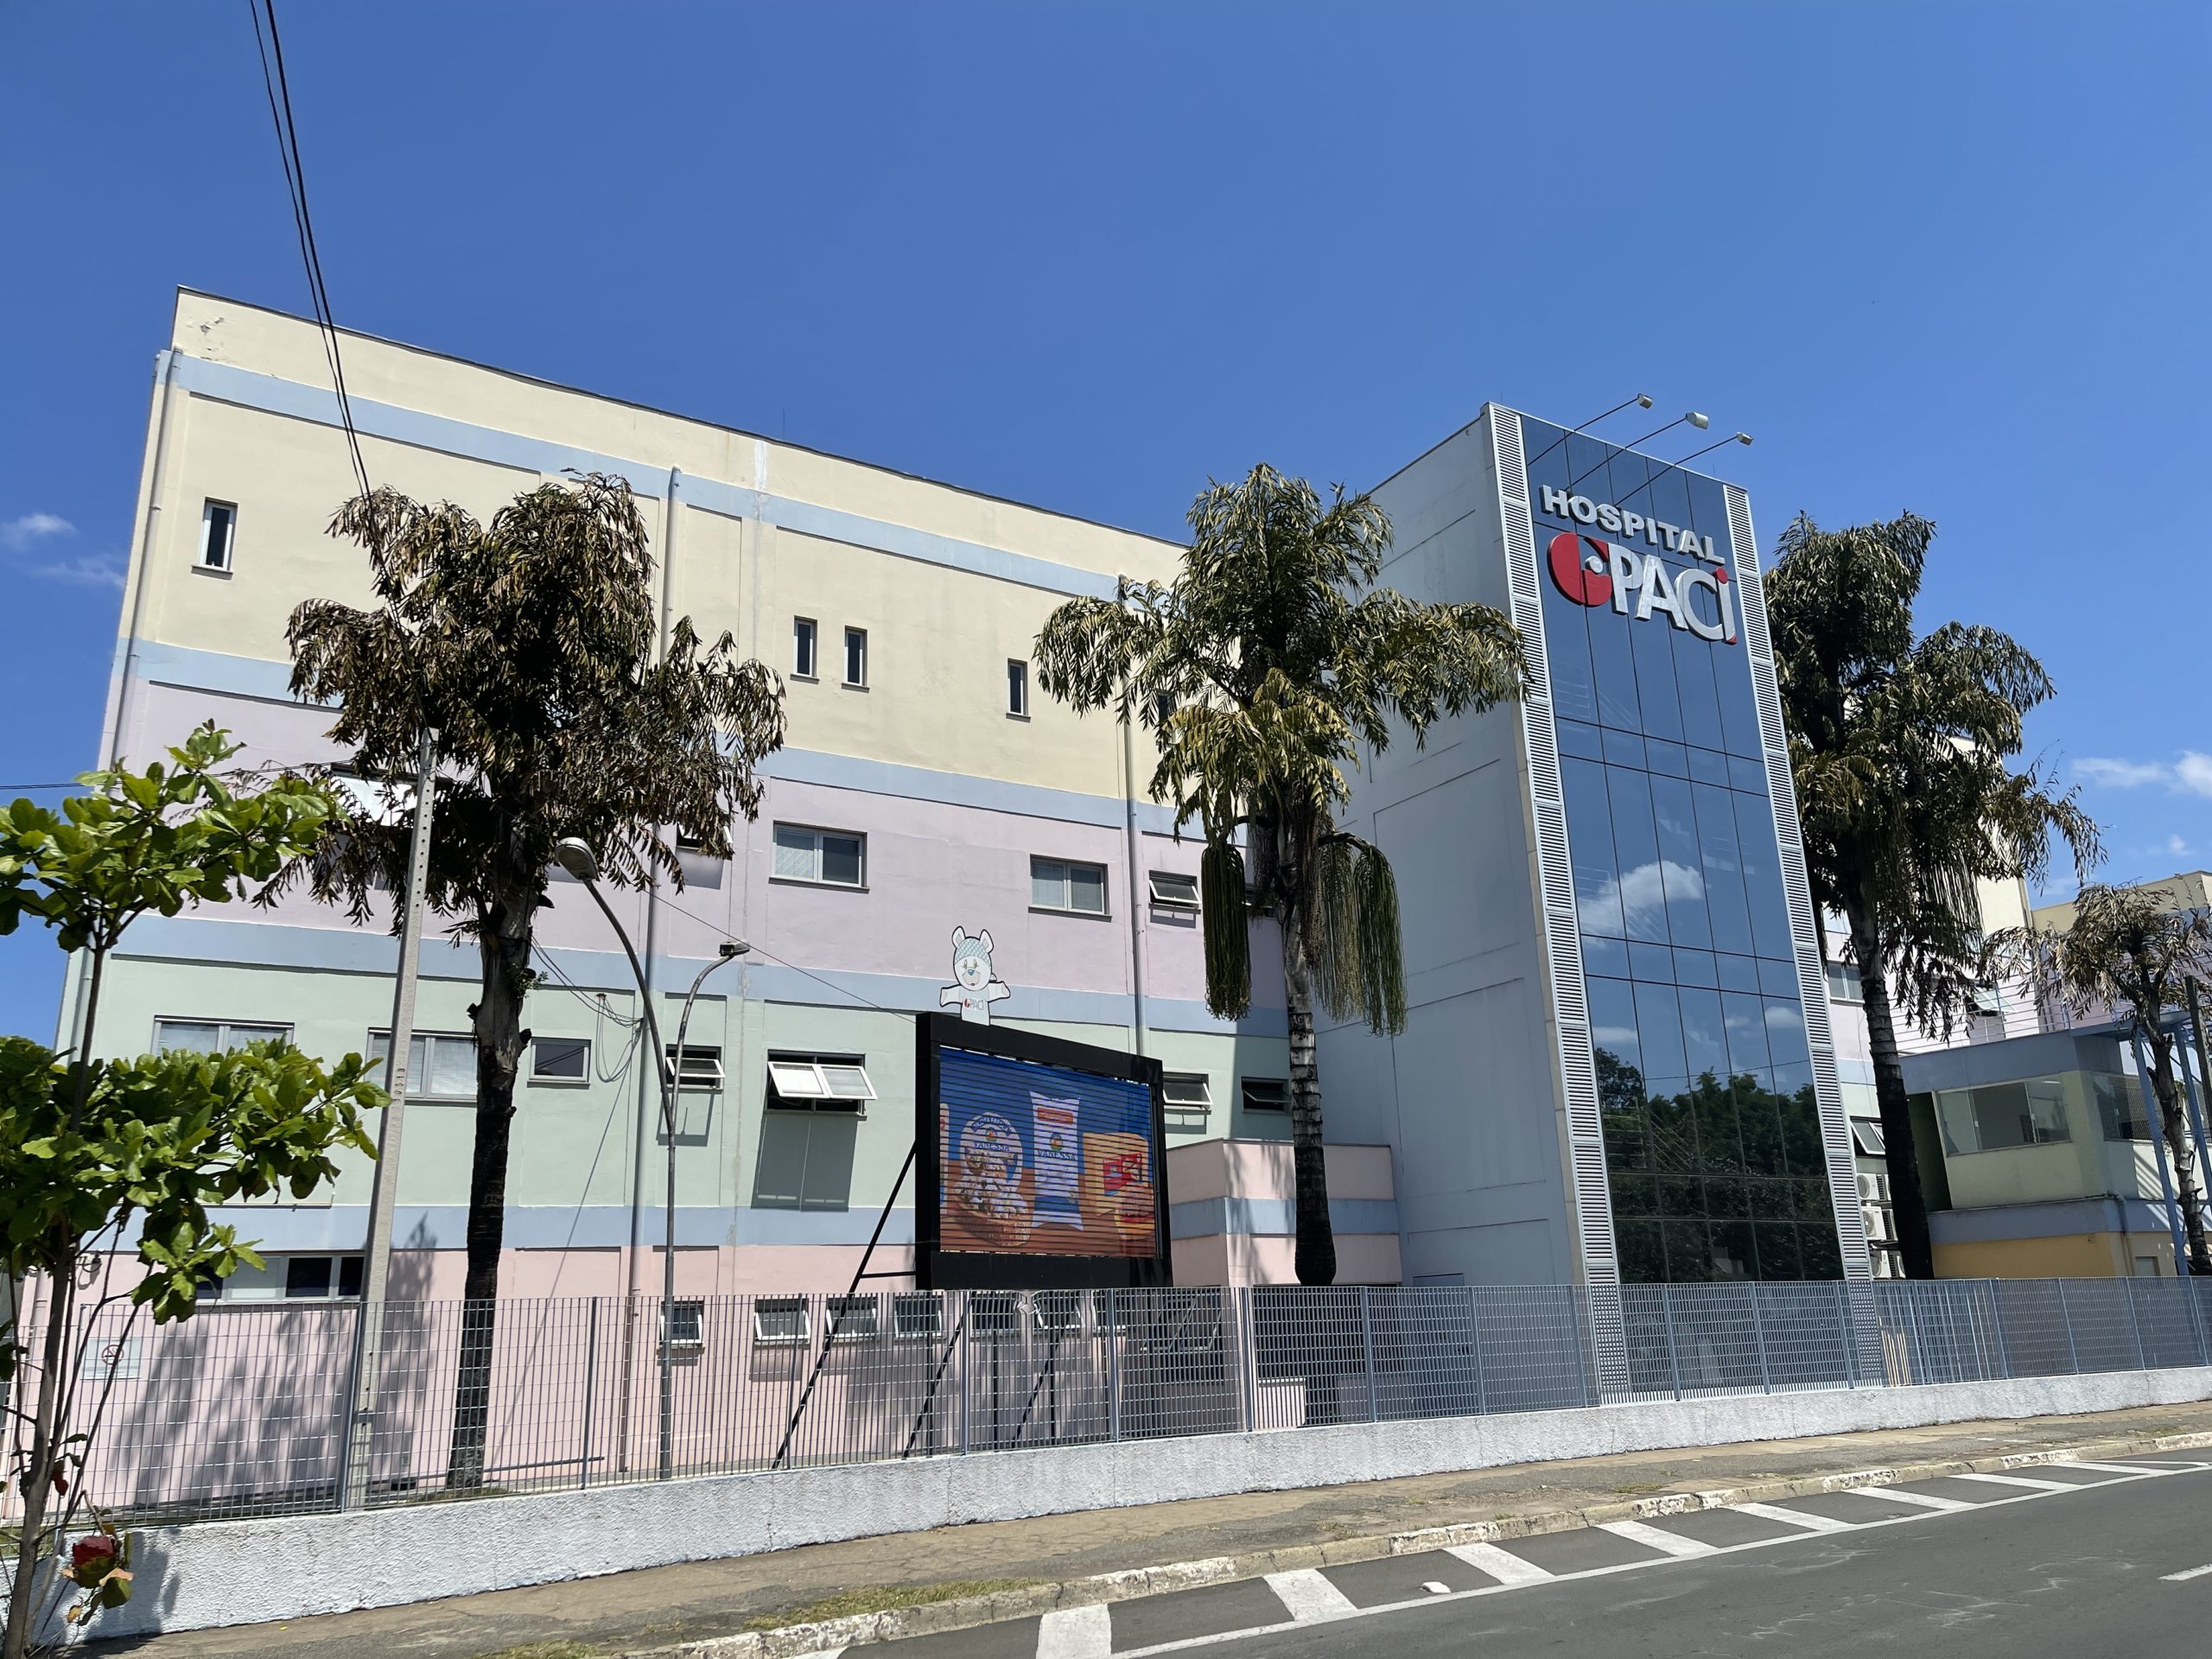 Hospital GPACI Sorocaba- Convênio de Saúde Online